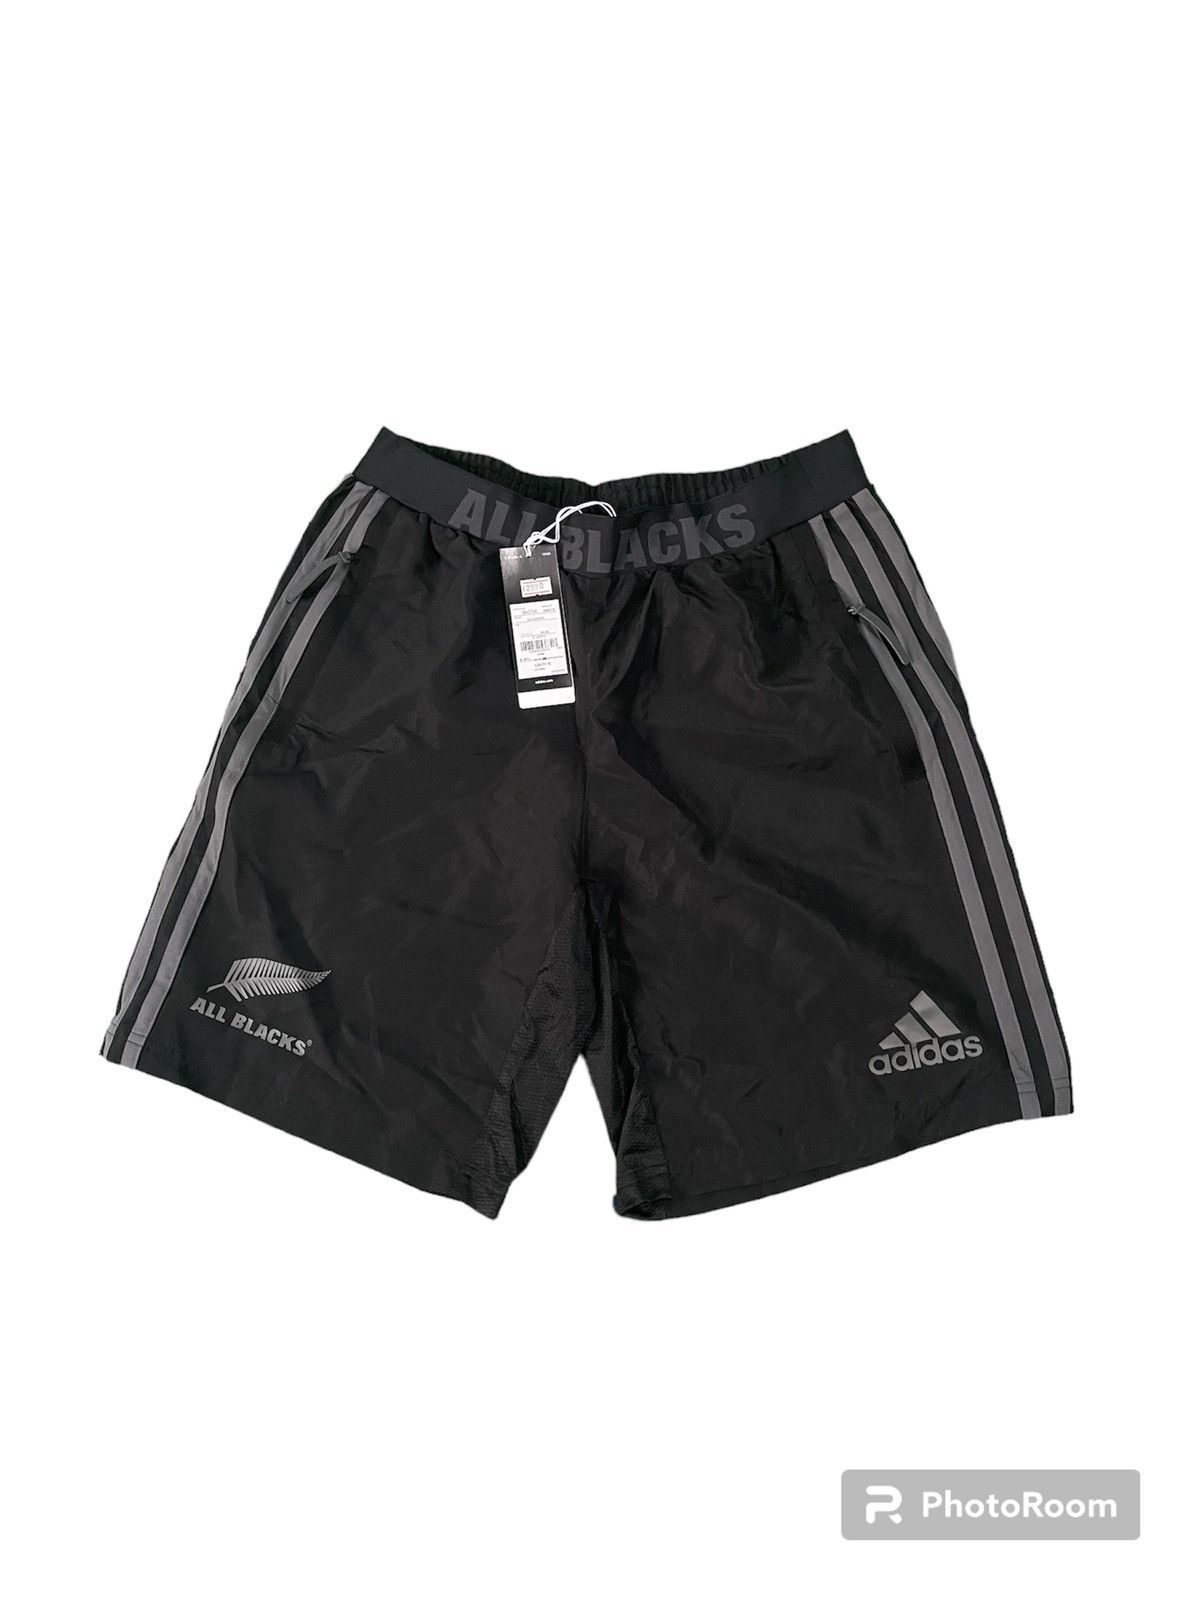 Adidas All Black Short - 1